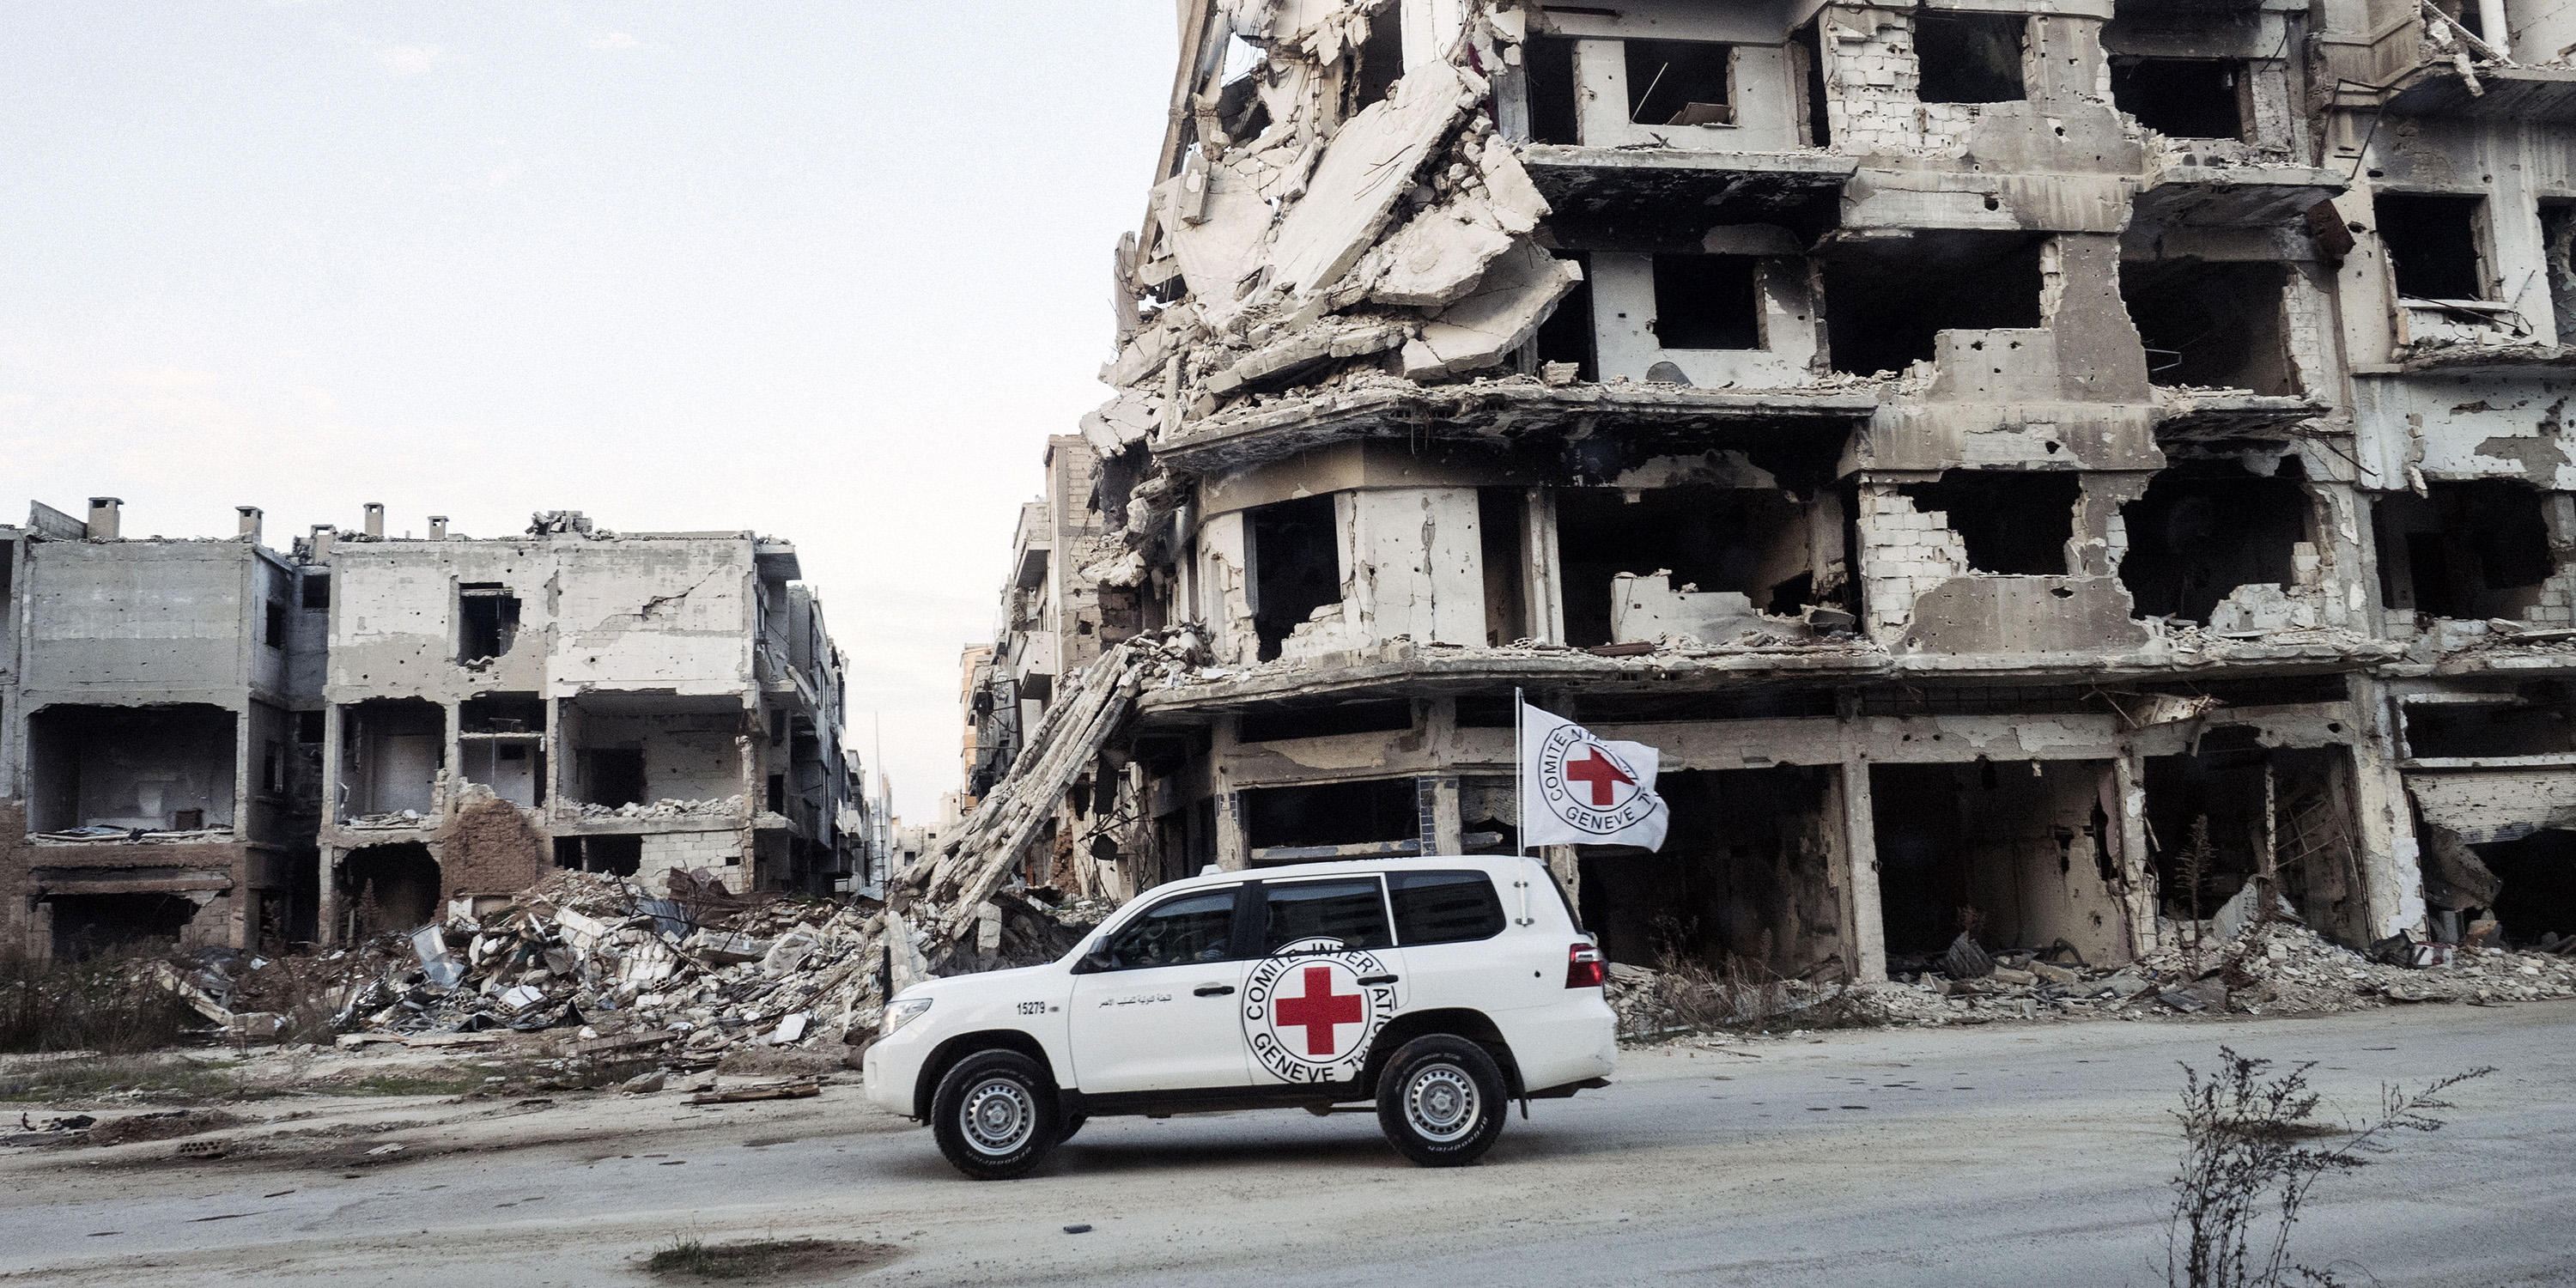 Auto des Internationalen Komitee vom Roten Kreuz in Krisengebiet